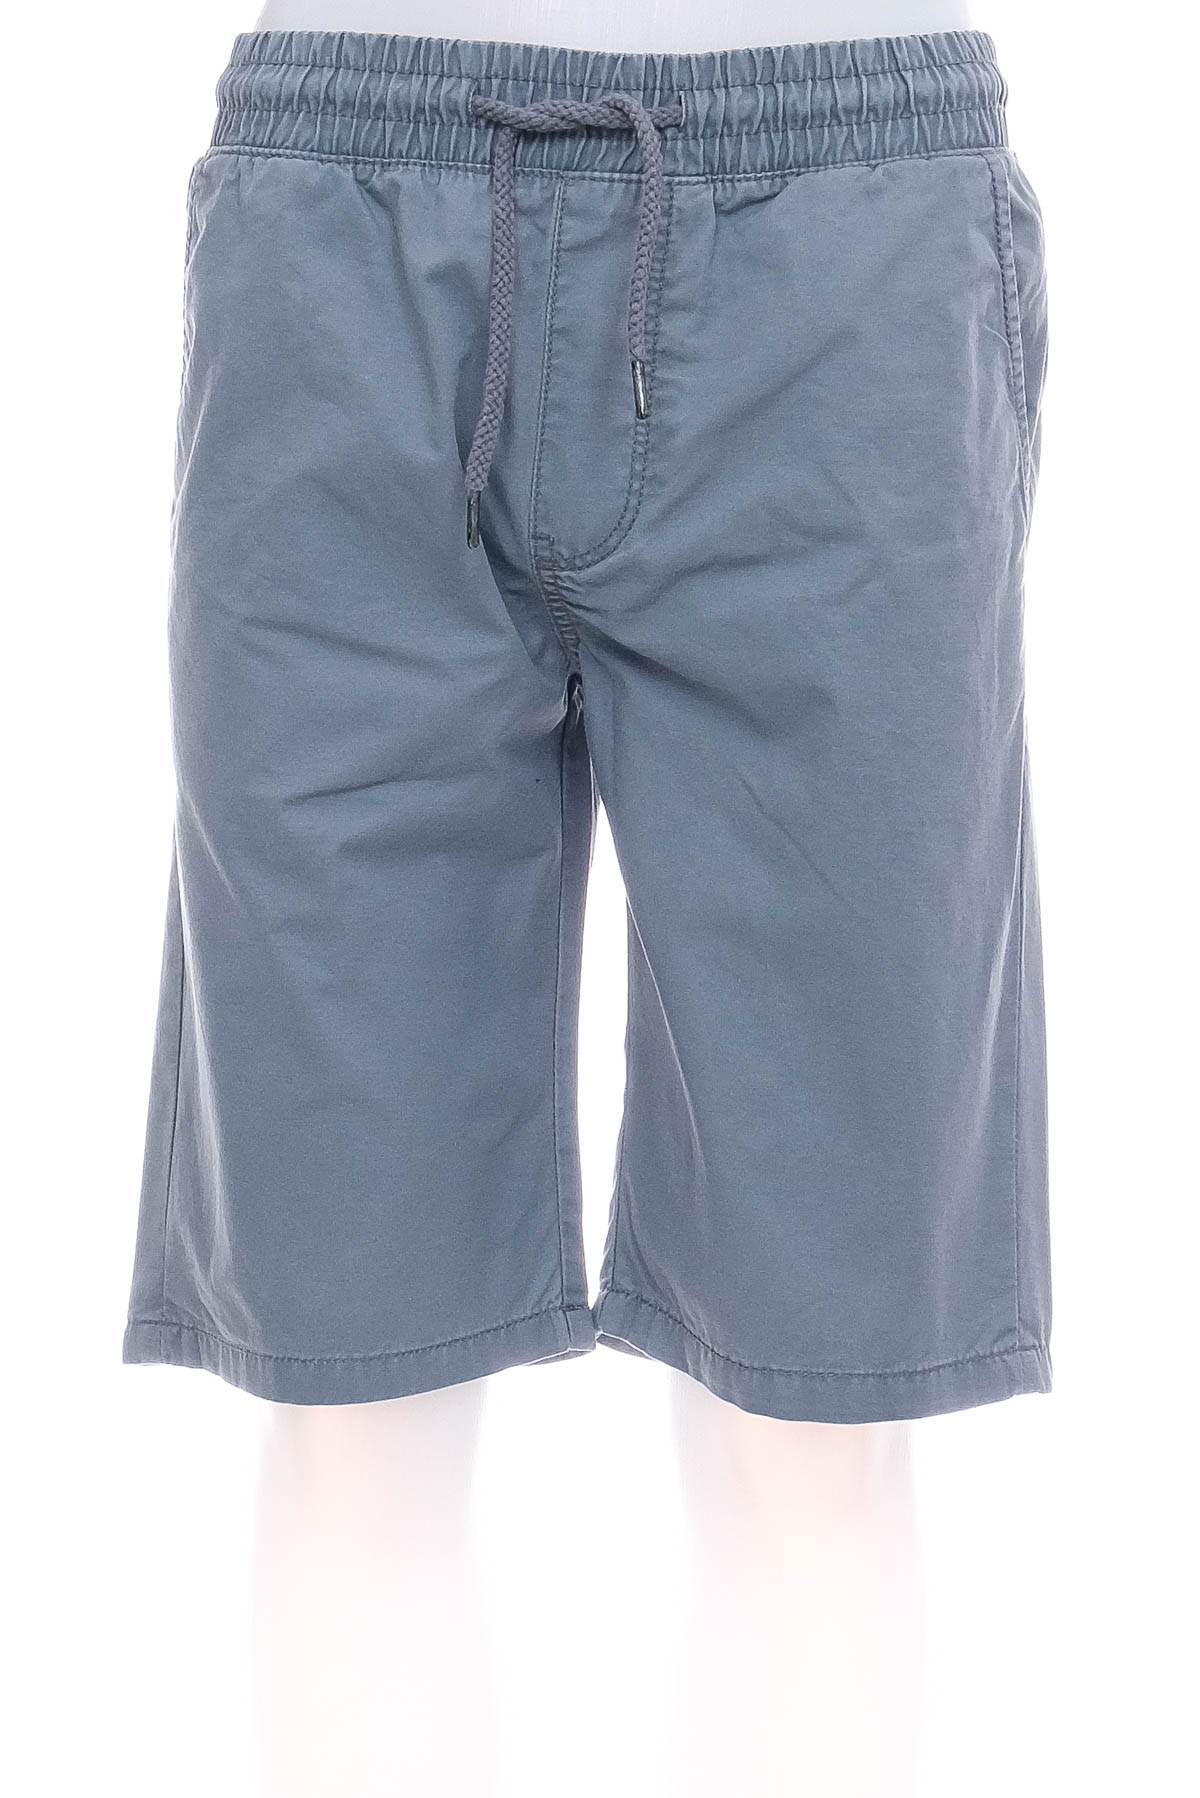 Pantaloni scurți bărbați - FSBN - 0